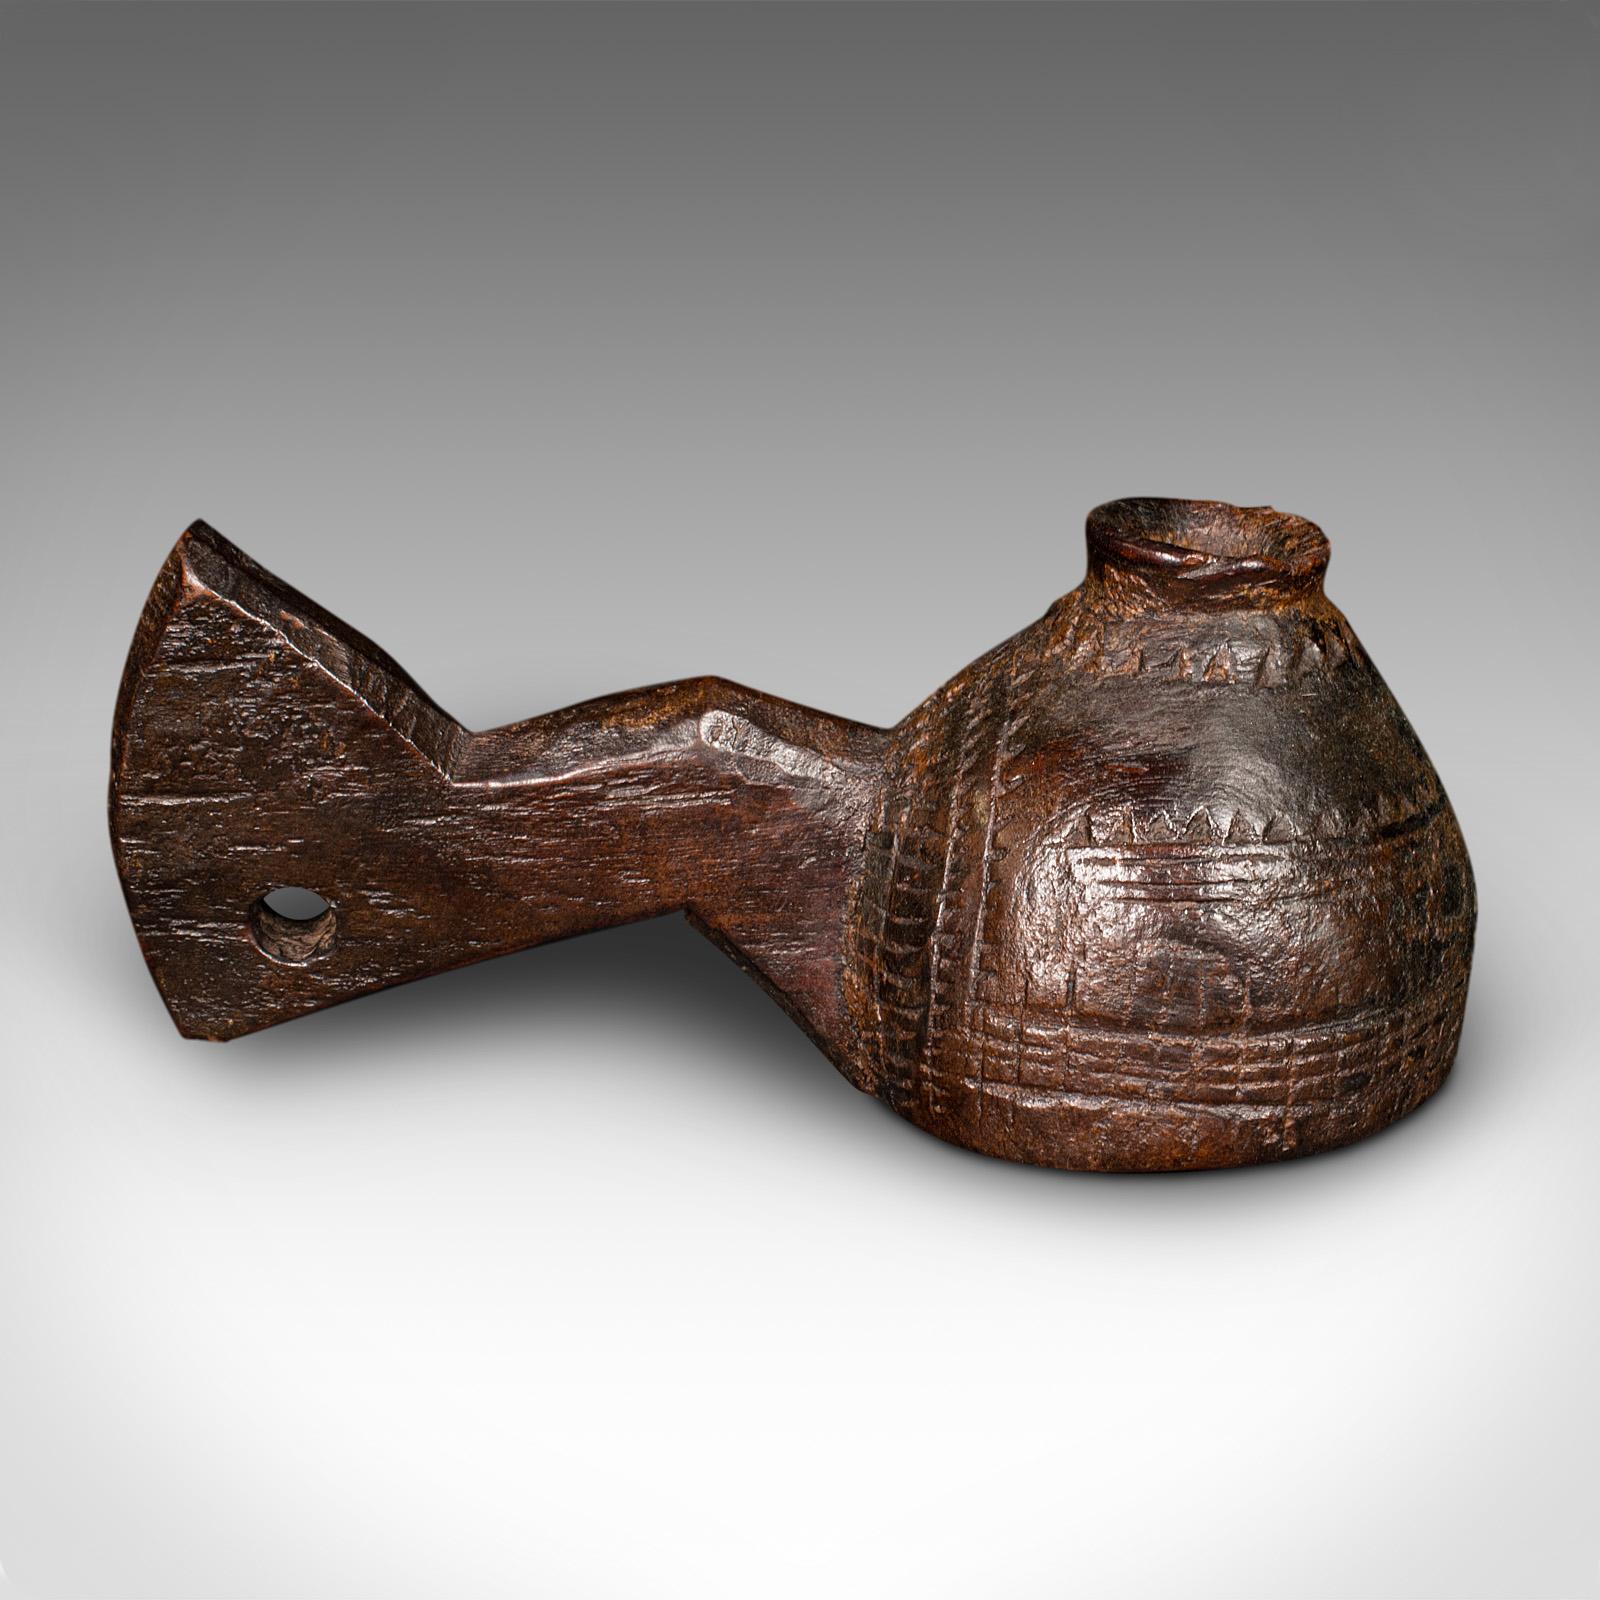 Dies ist ein antiker Ghee-Servierkrug. Ein indianischer Trinkbecher aus Hartholz oder eine dekorative Kerzendüse aus der Mitte des Viktorianischen Zeitalters, um 1860.

Faszinierend naiver Baum mit außergewöhnlicher Verwitterung
Zeigt eine